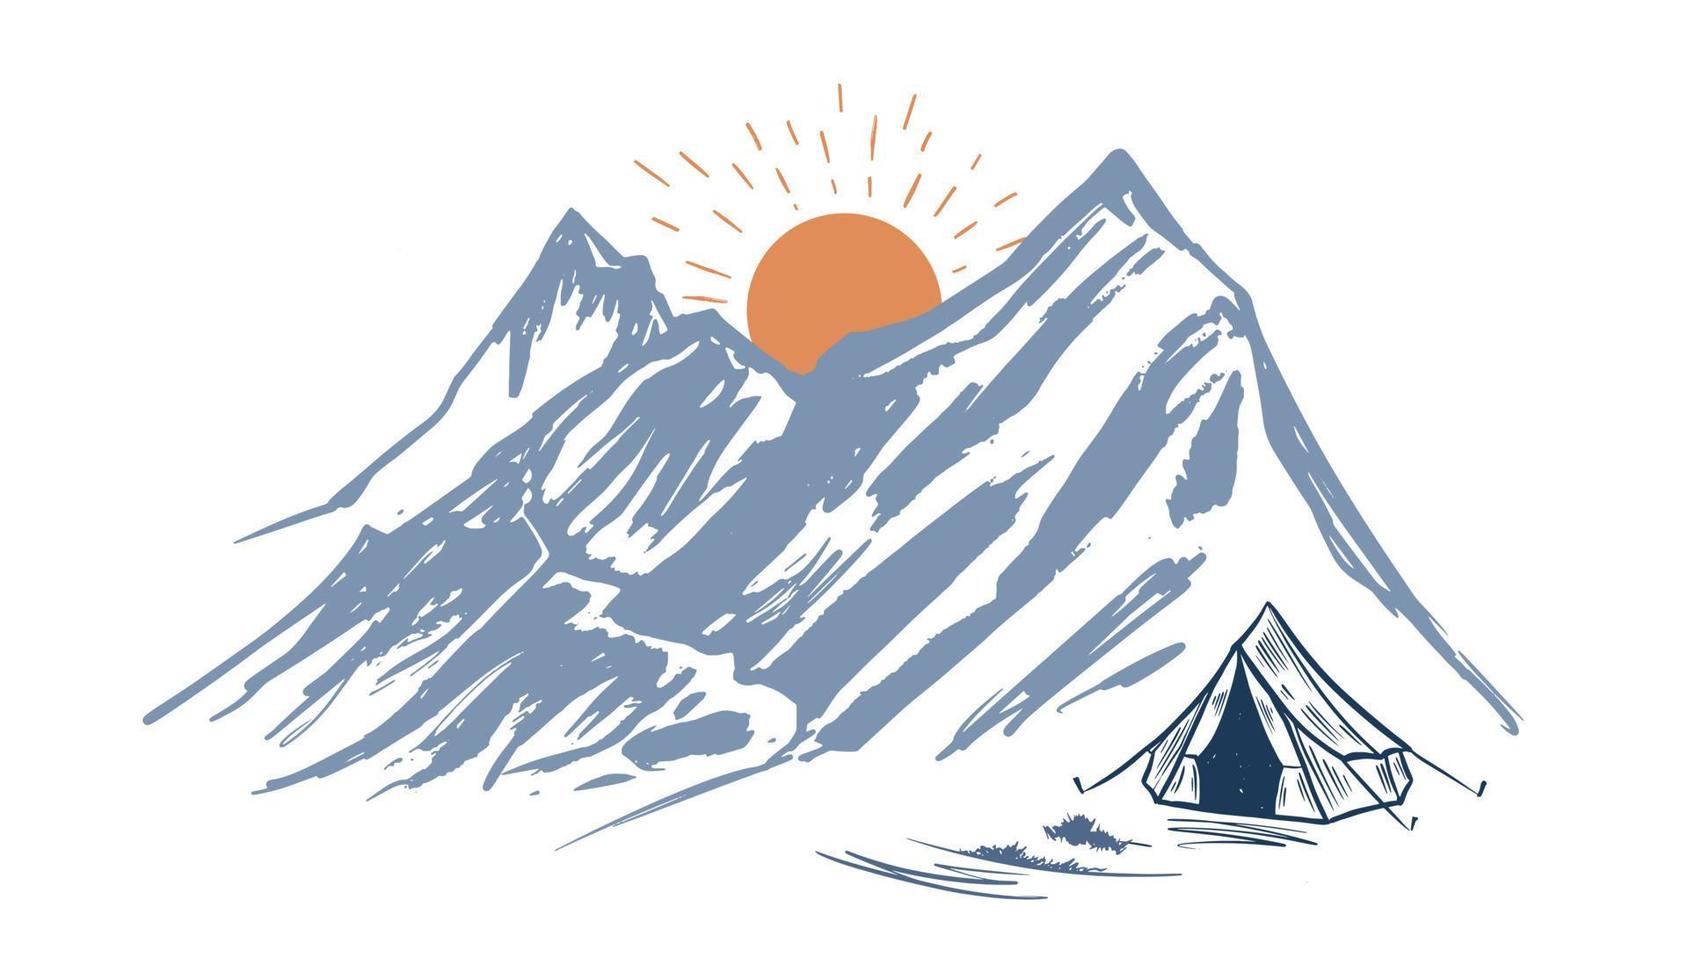 Camping in der Natur, Berge, handgezeichnete Illustrationen vektor